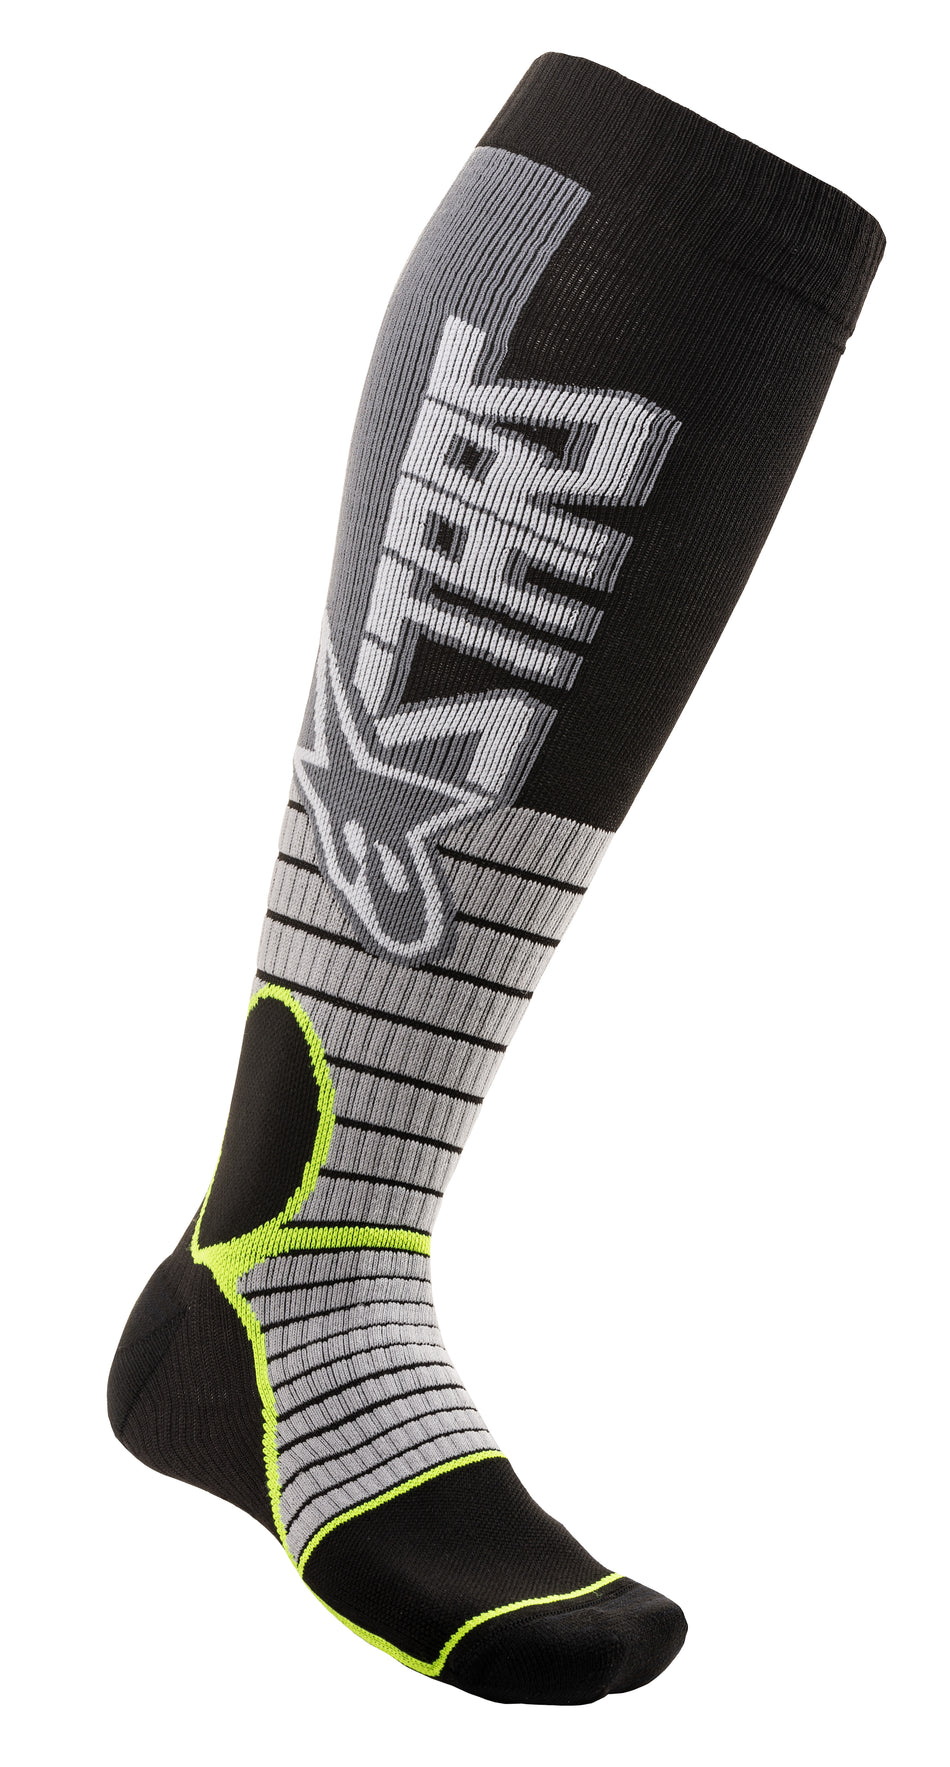 ALPINESTARS Mx Pro Socks Cool Grey/Yellow Lg 4701520-905-L